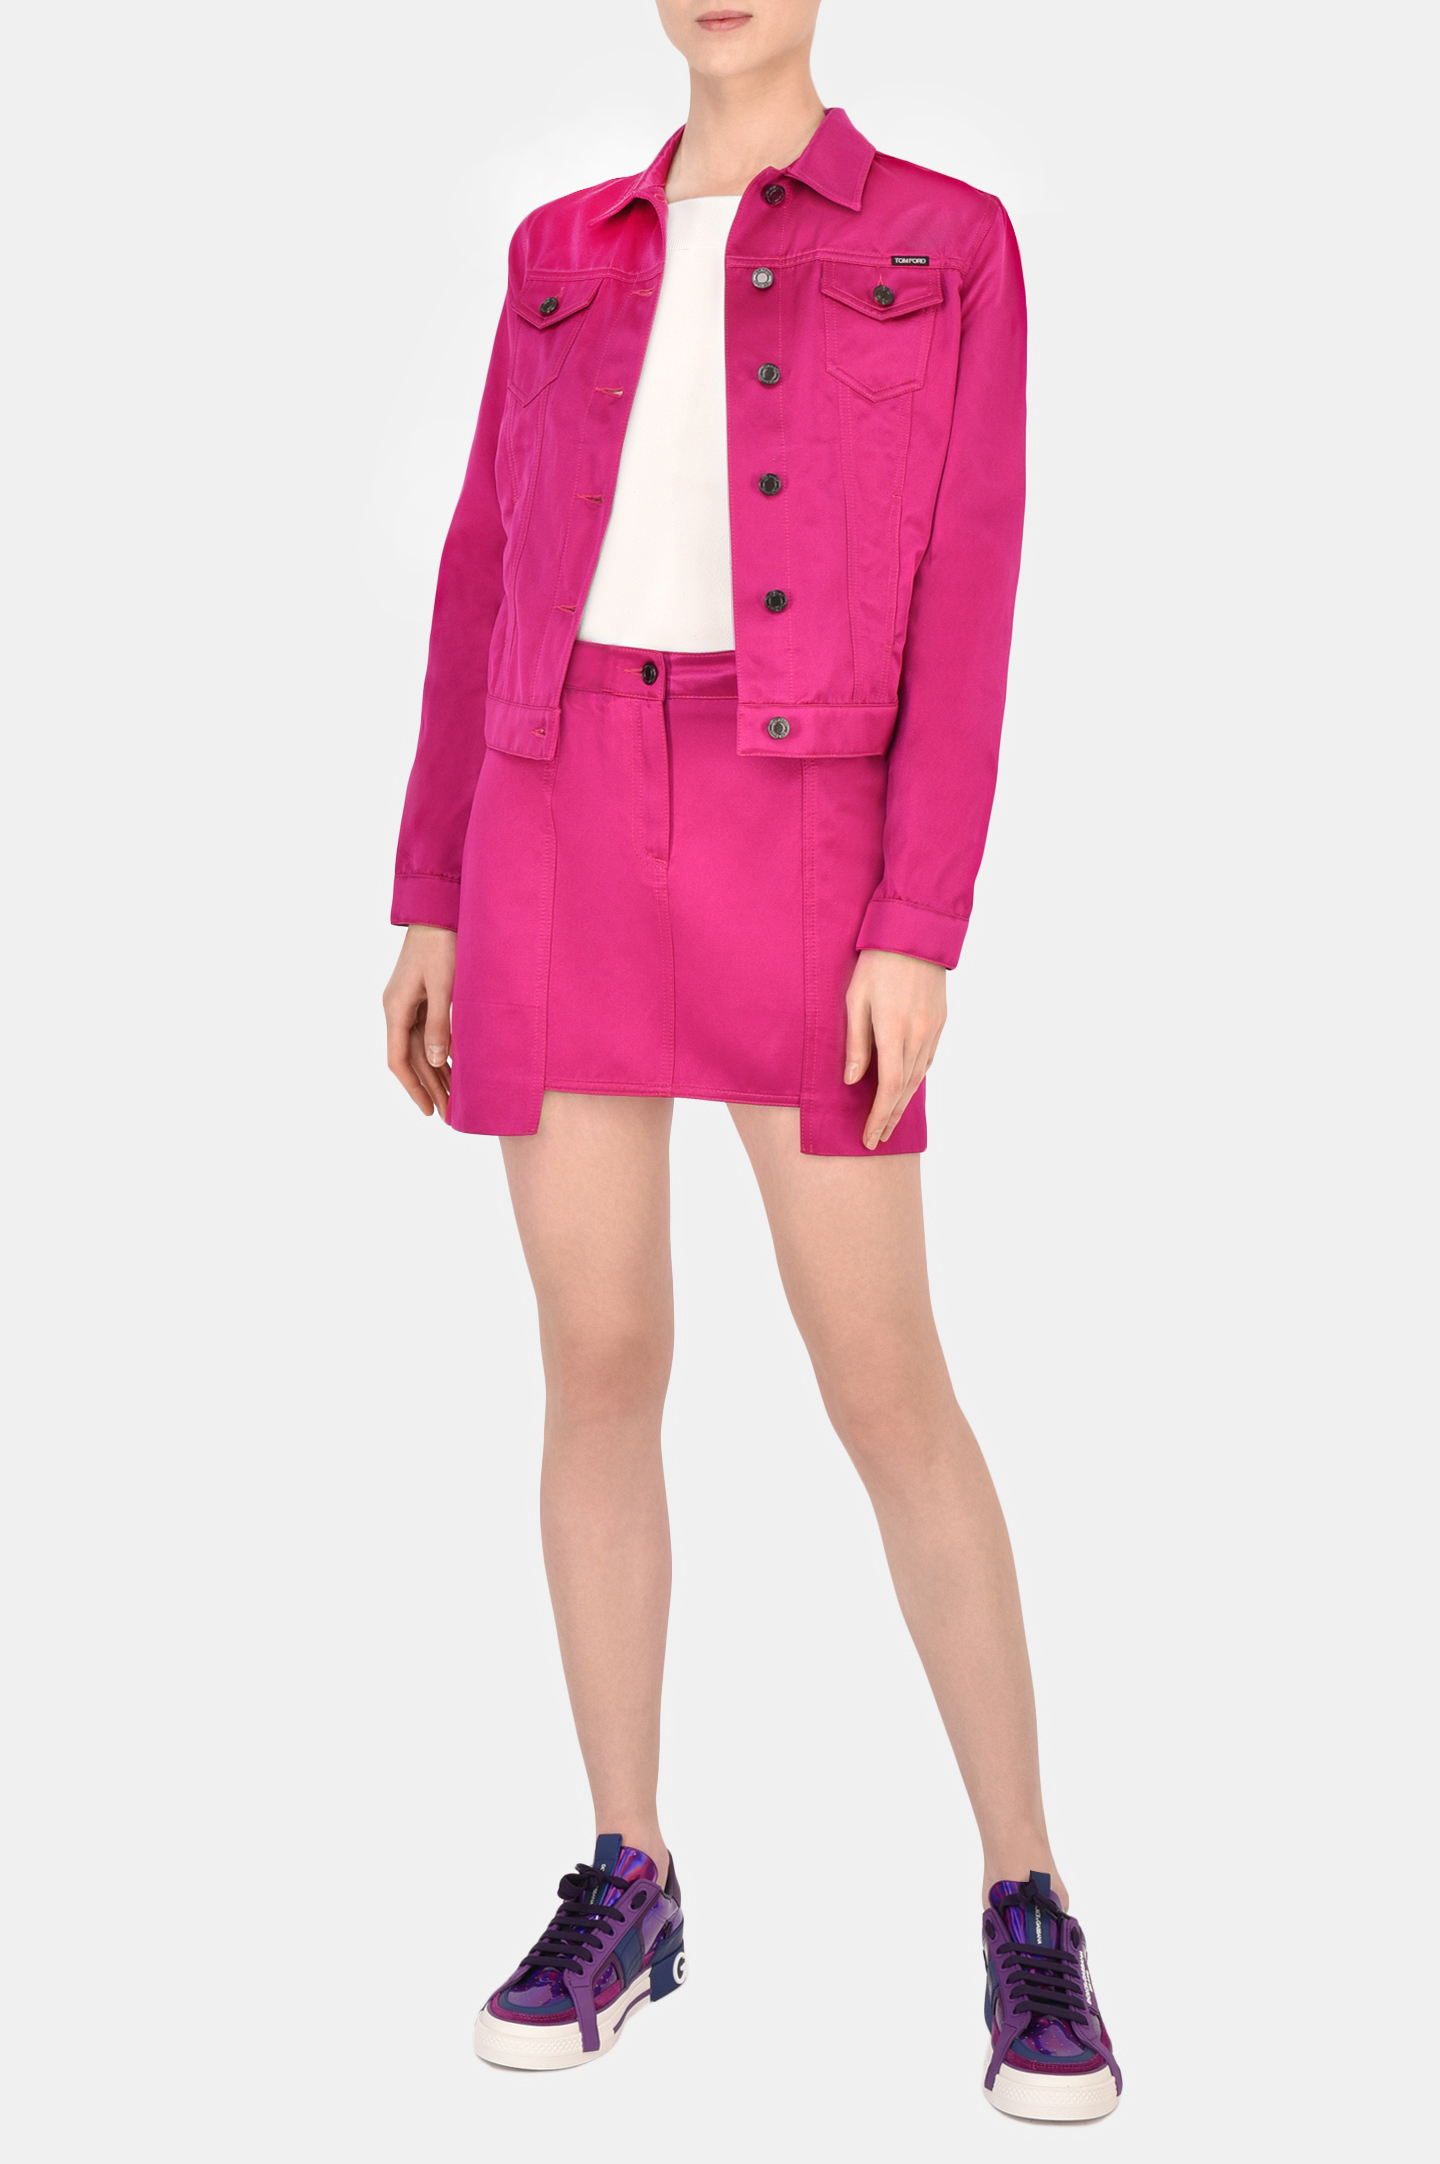 Куртка TOM FORD GID051 DEX134, цвет: Розовый, Женский